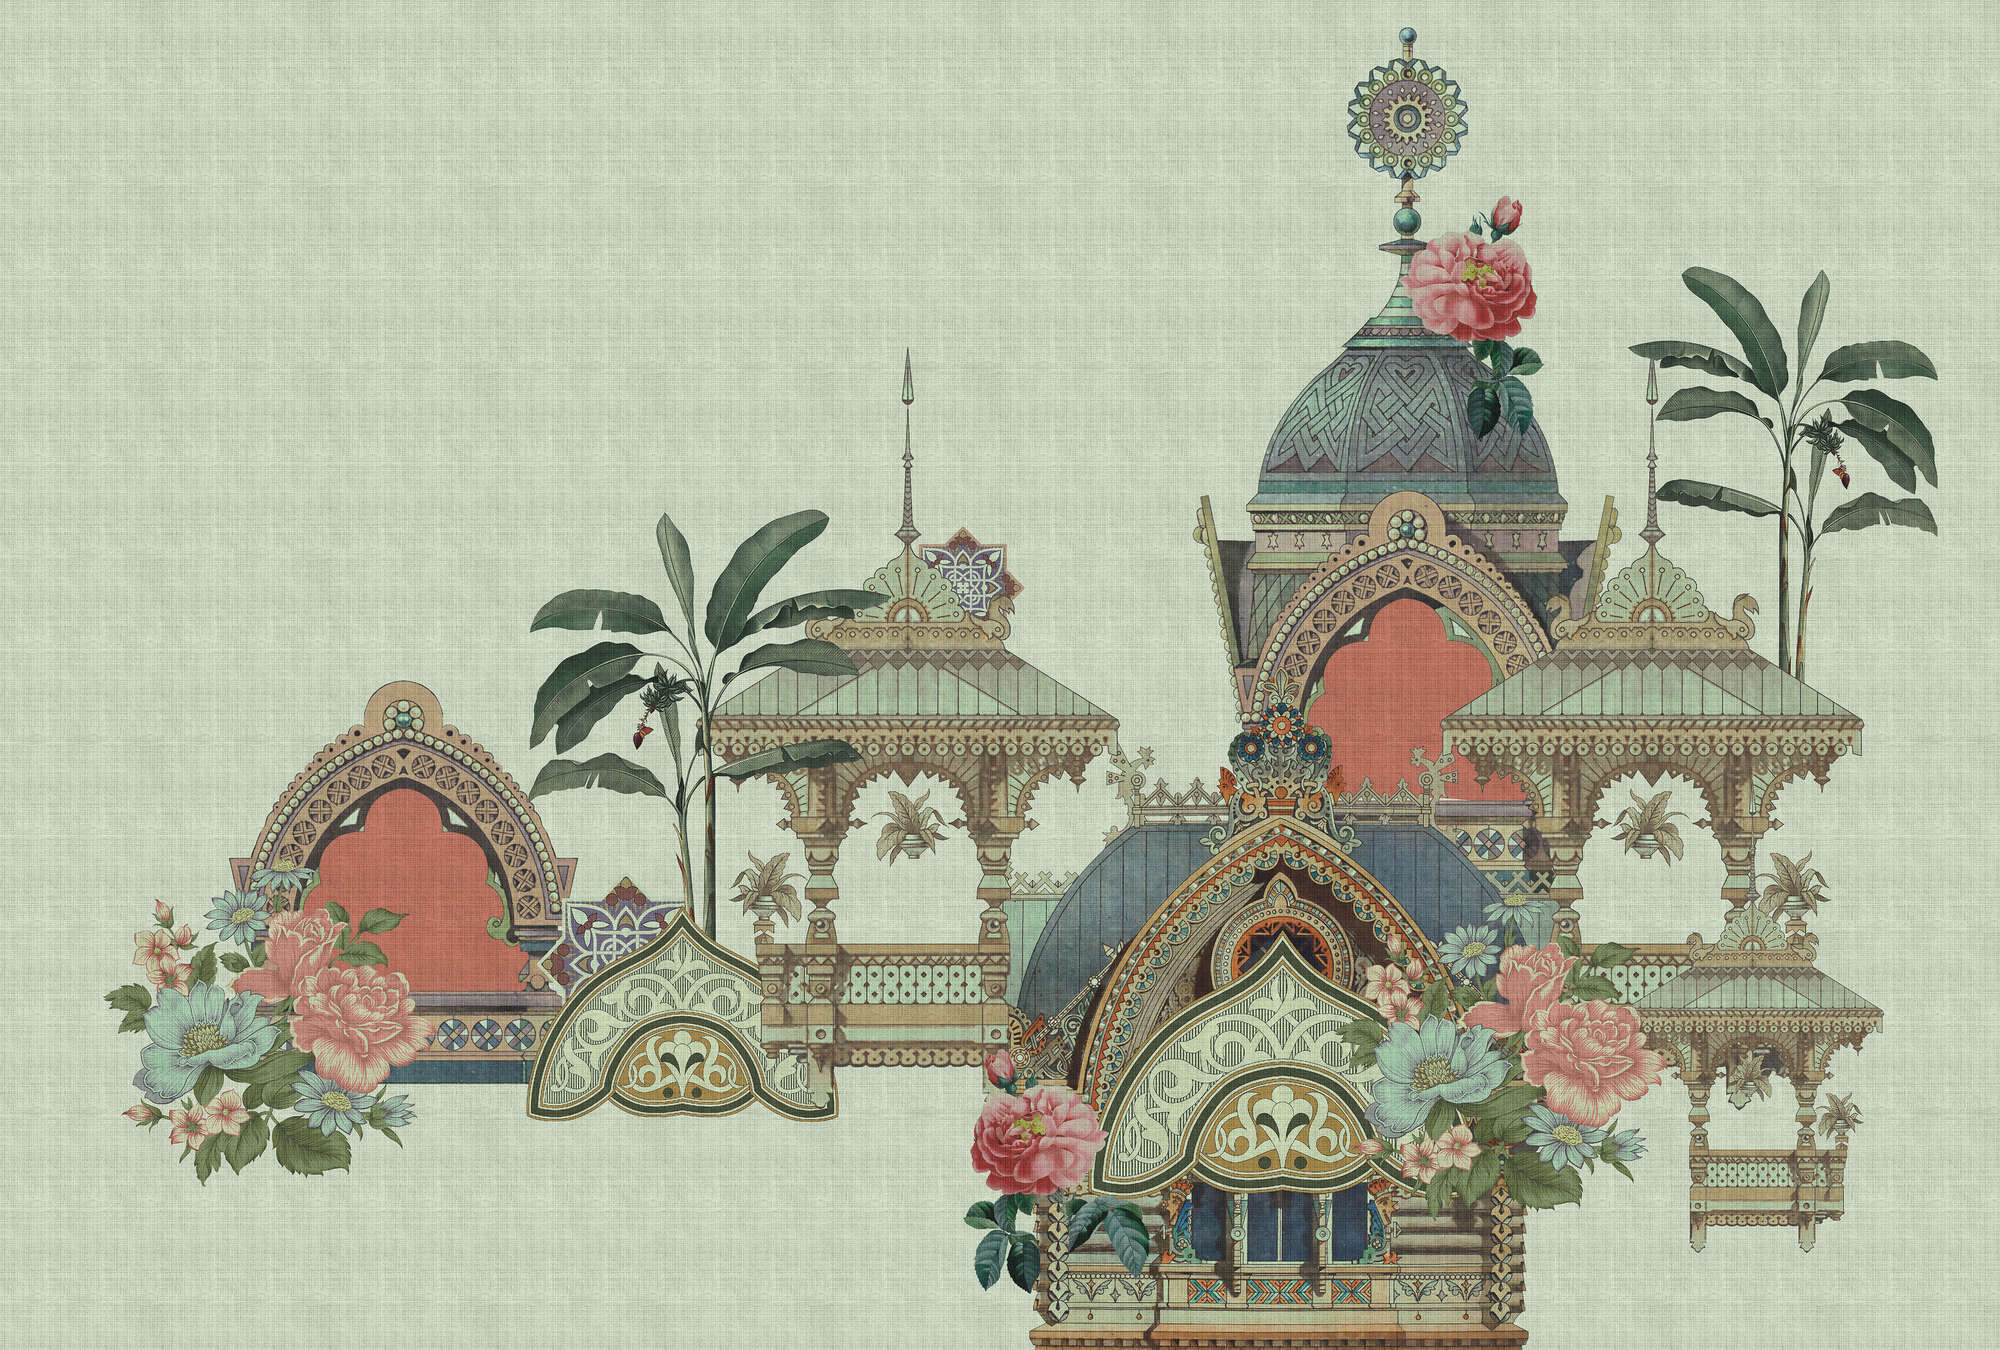             Jaipur 1 - papier peint Inde Temple & Design floral
        